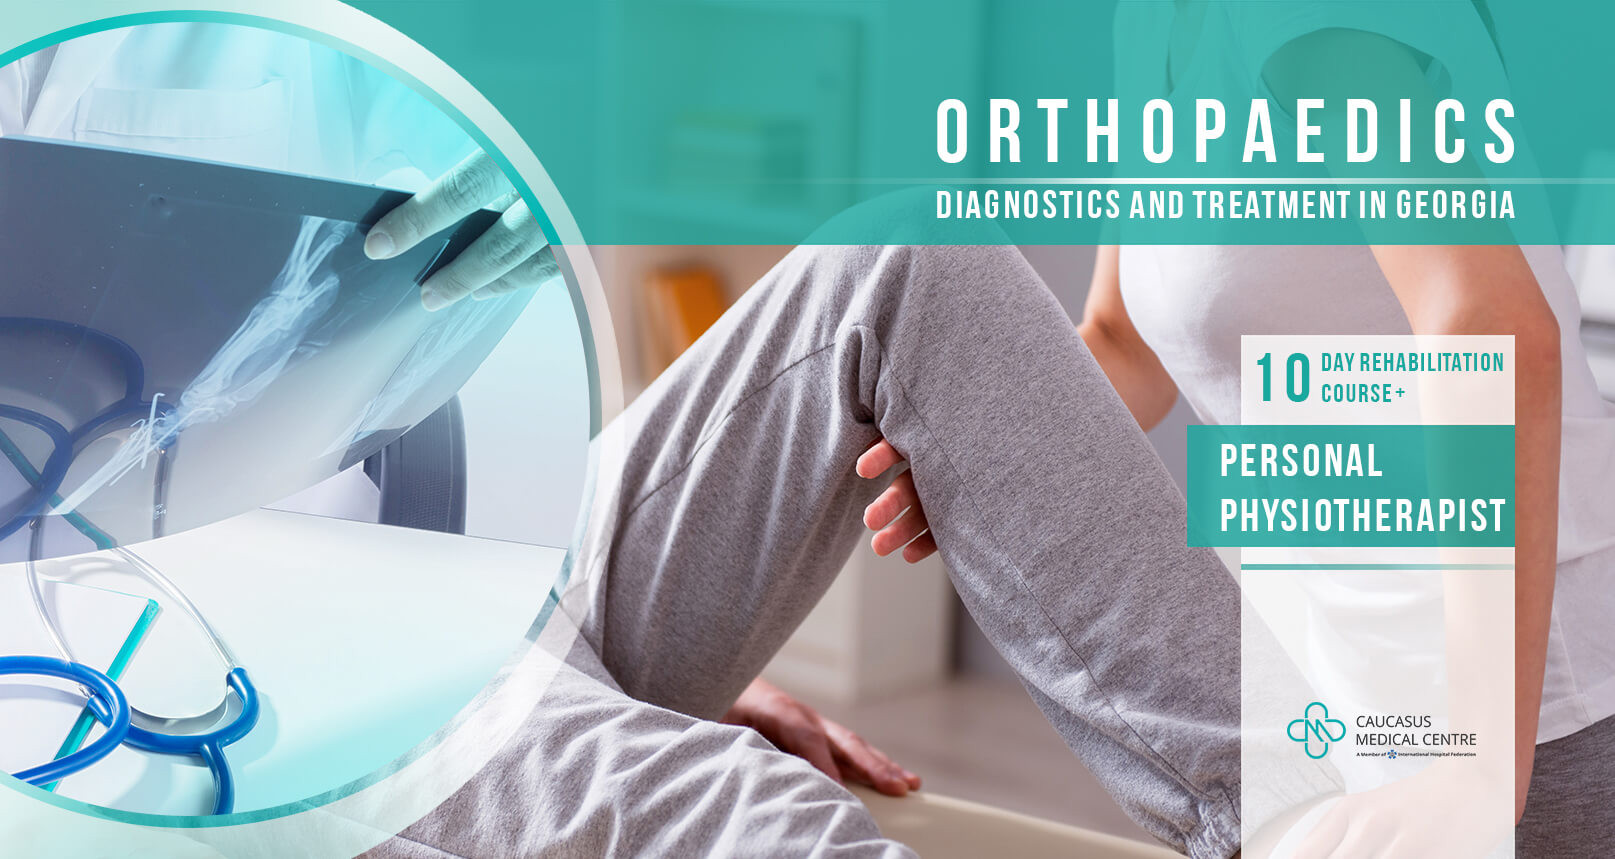 Orthopedics & Traumatology with Personal Physiotherapist